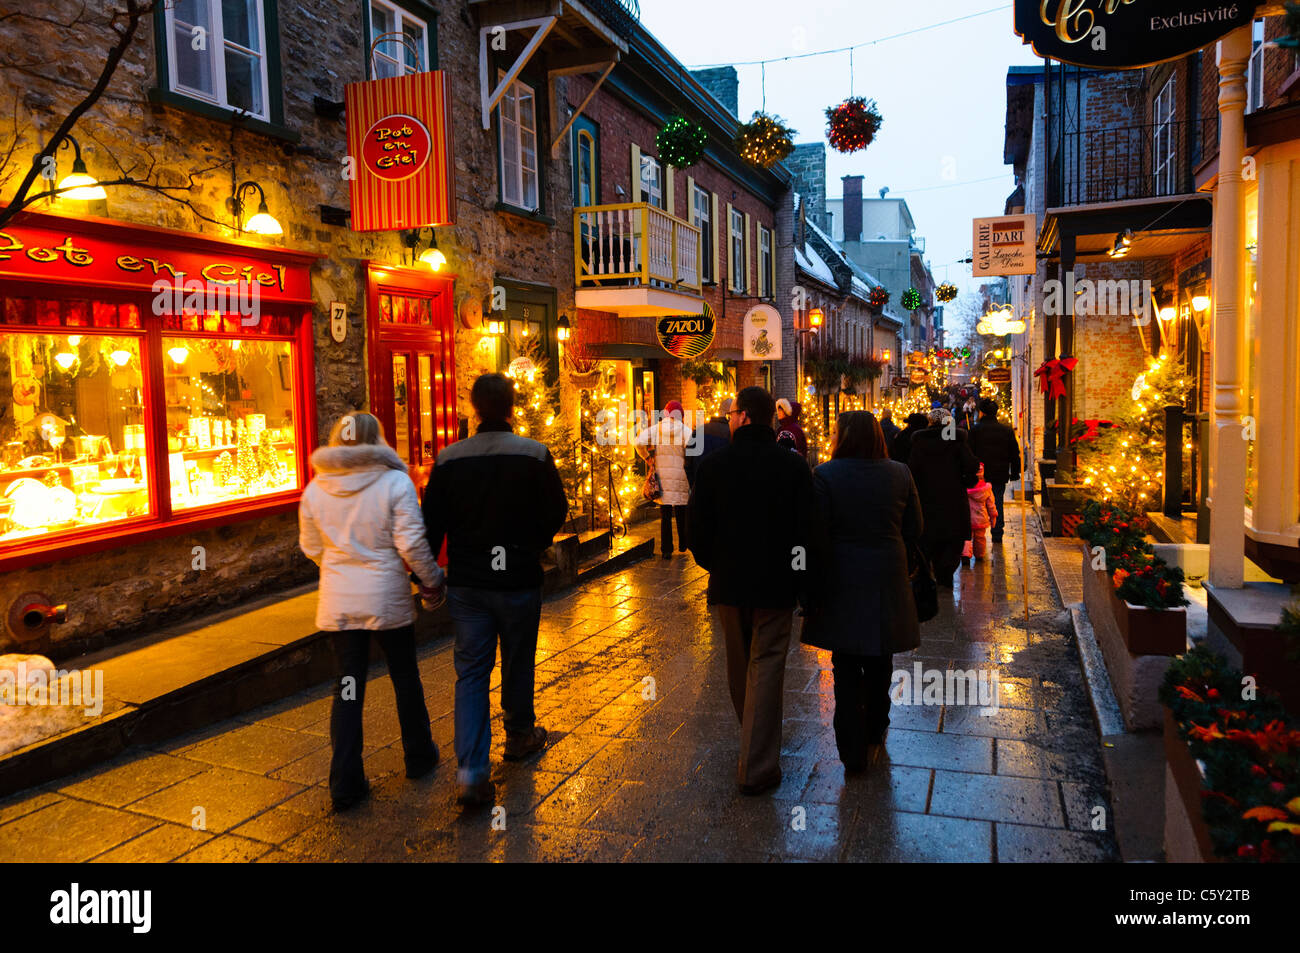 La città di Quebec, Canada - la pittoresca vecchia strada dello shopping di Rue du Petit-Champlain in Quebec Città Vecchia, decorato per il natale e prese a notte. Foto Stock